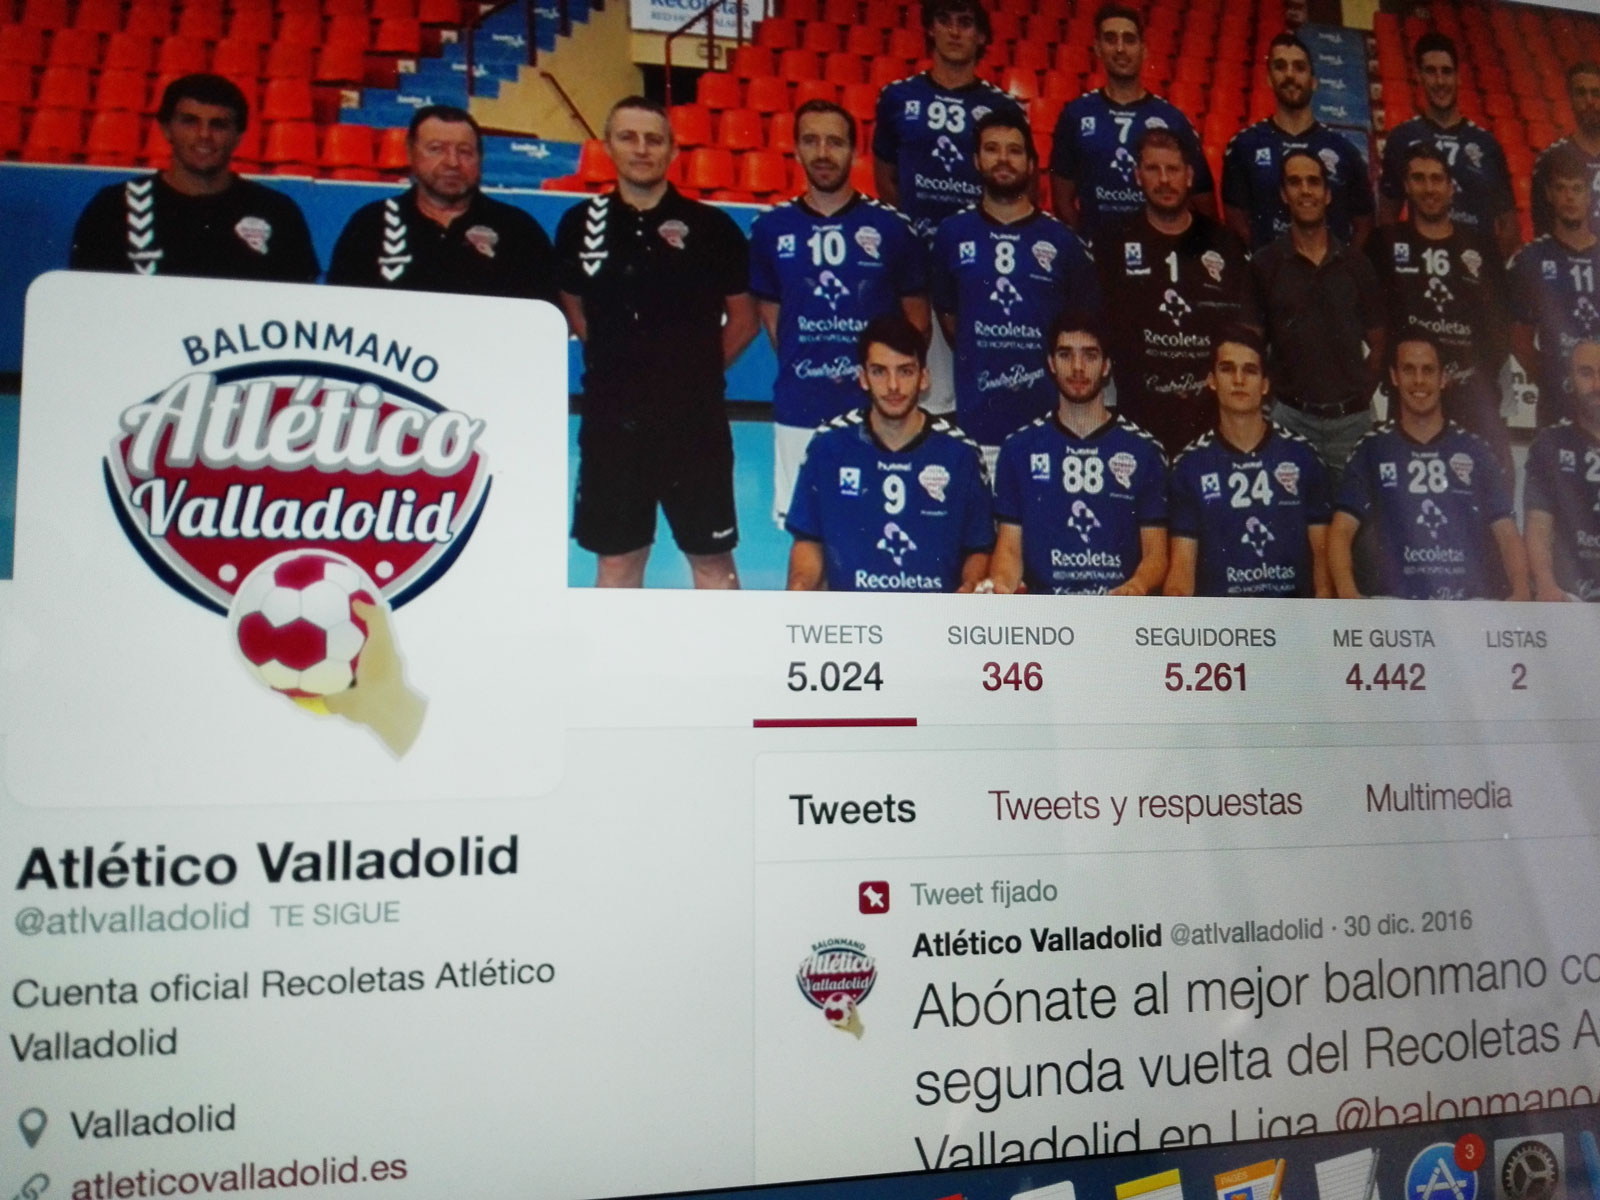 El Recoletas Atlético Valladolid, el segundo club que más crece en redes sociales esta temporada